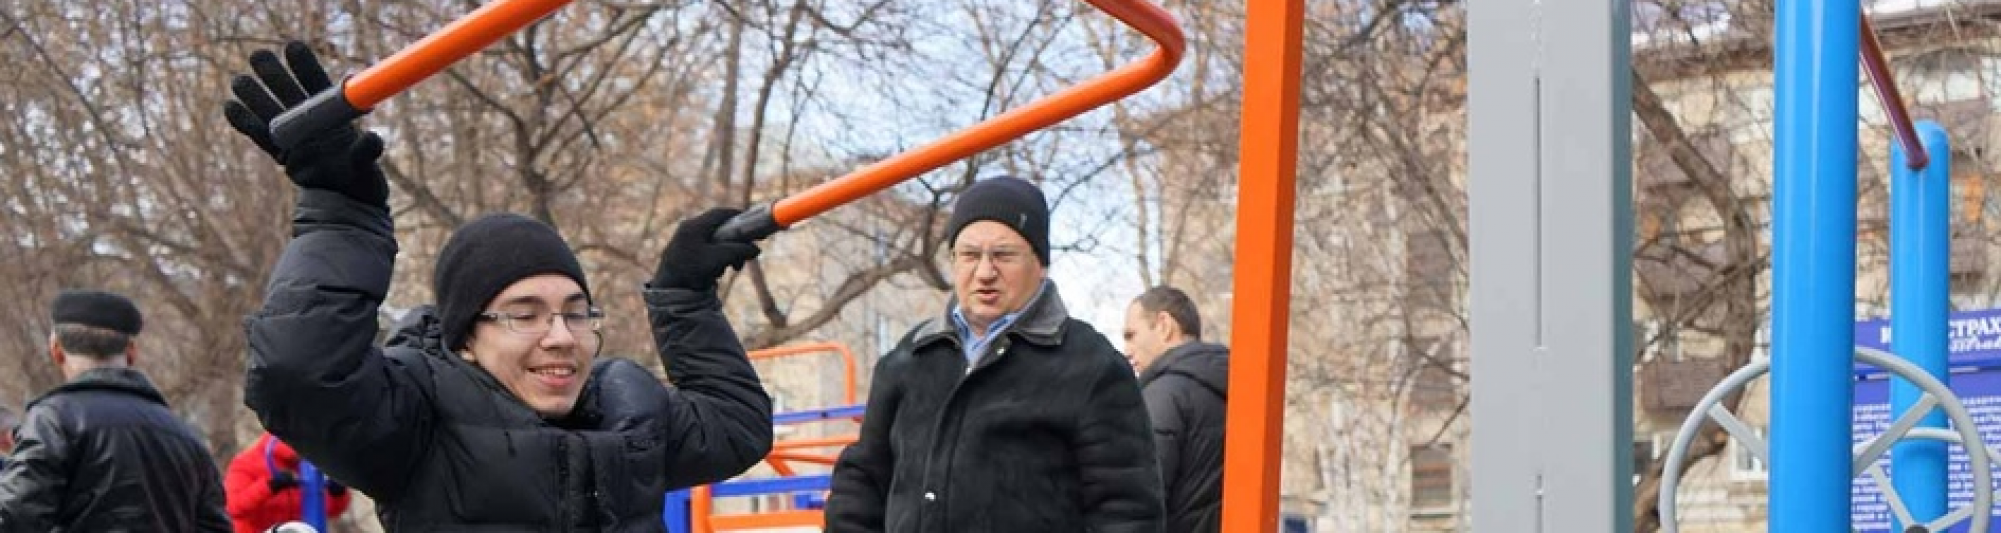 В рамках проекта Думы в 2019 году в Томске установят два спортивных комплекса для маломобильных граждан